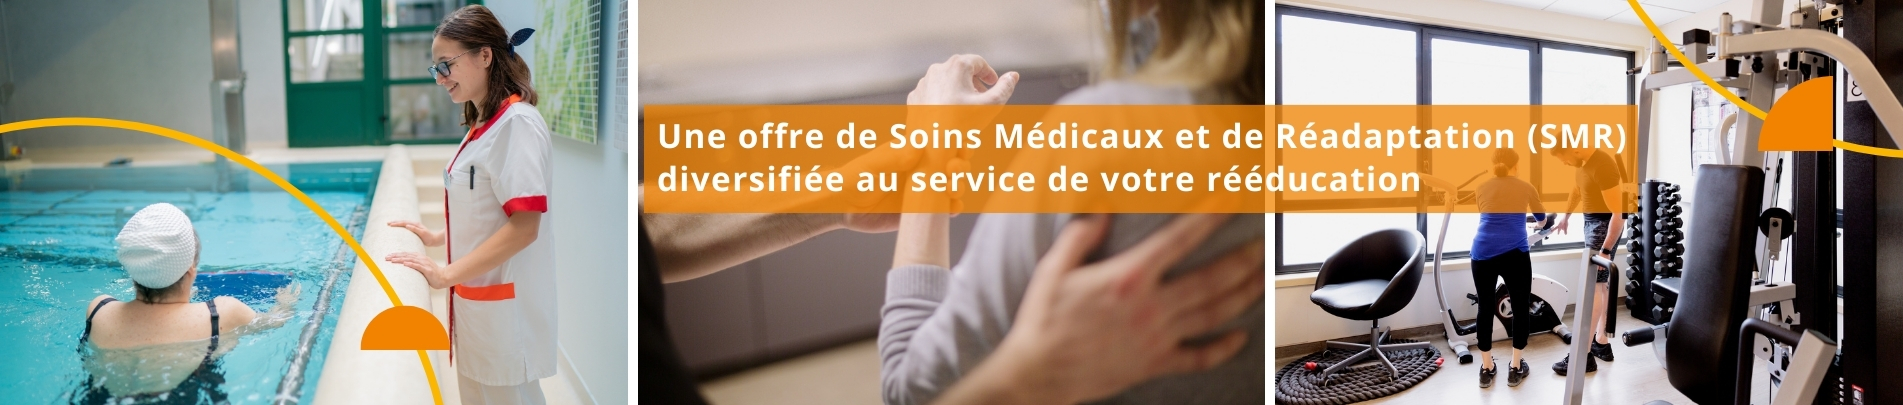 (vide) Une offre de Soins Médicaux et de Réadaptation (SMR)